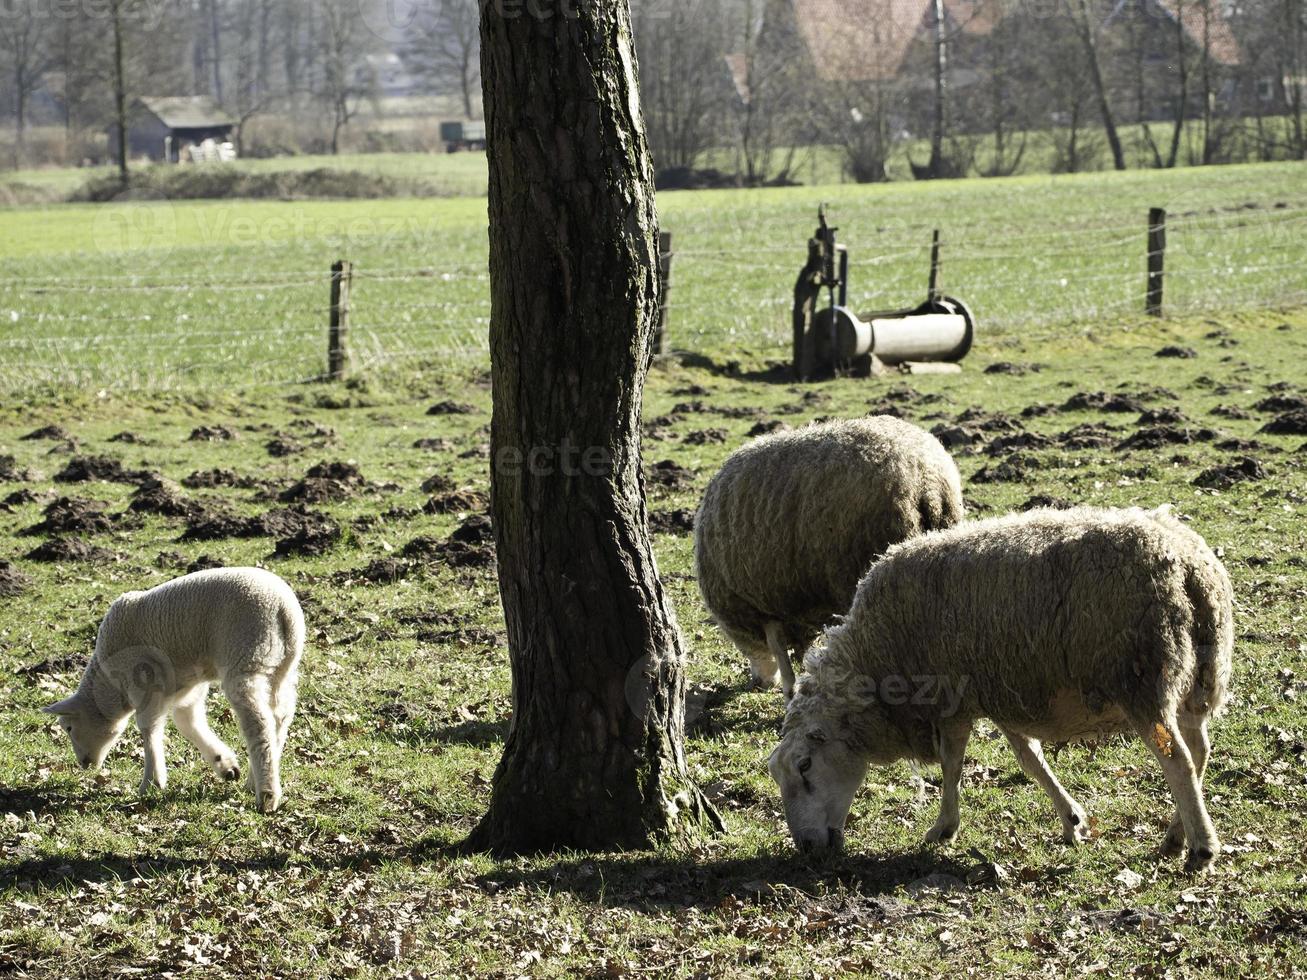 Schafe auf einer Wiese foto